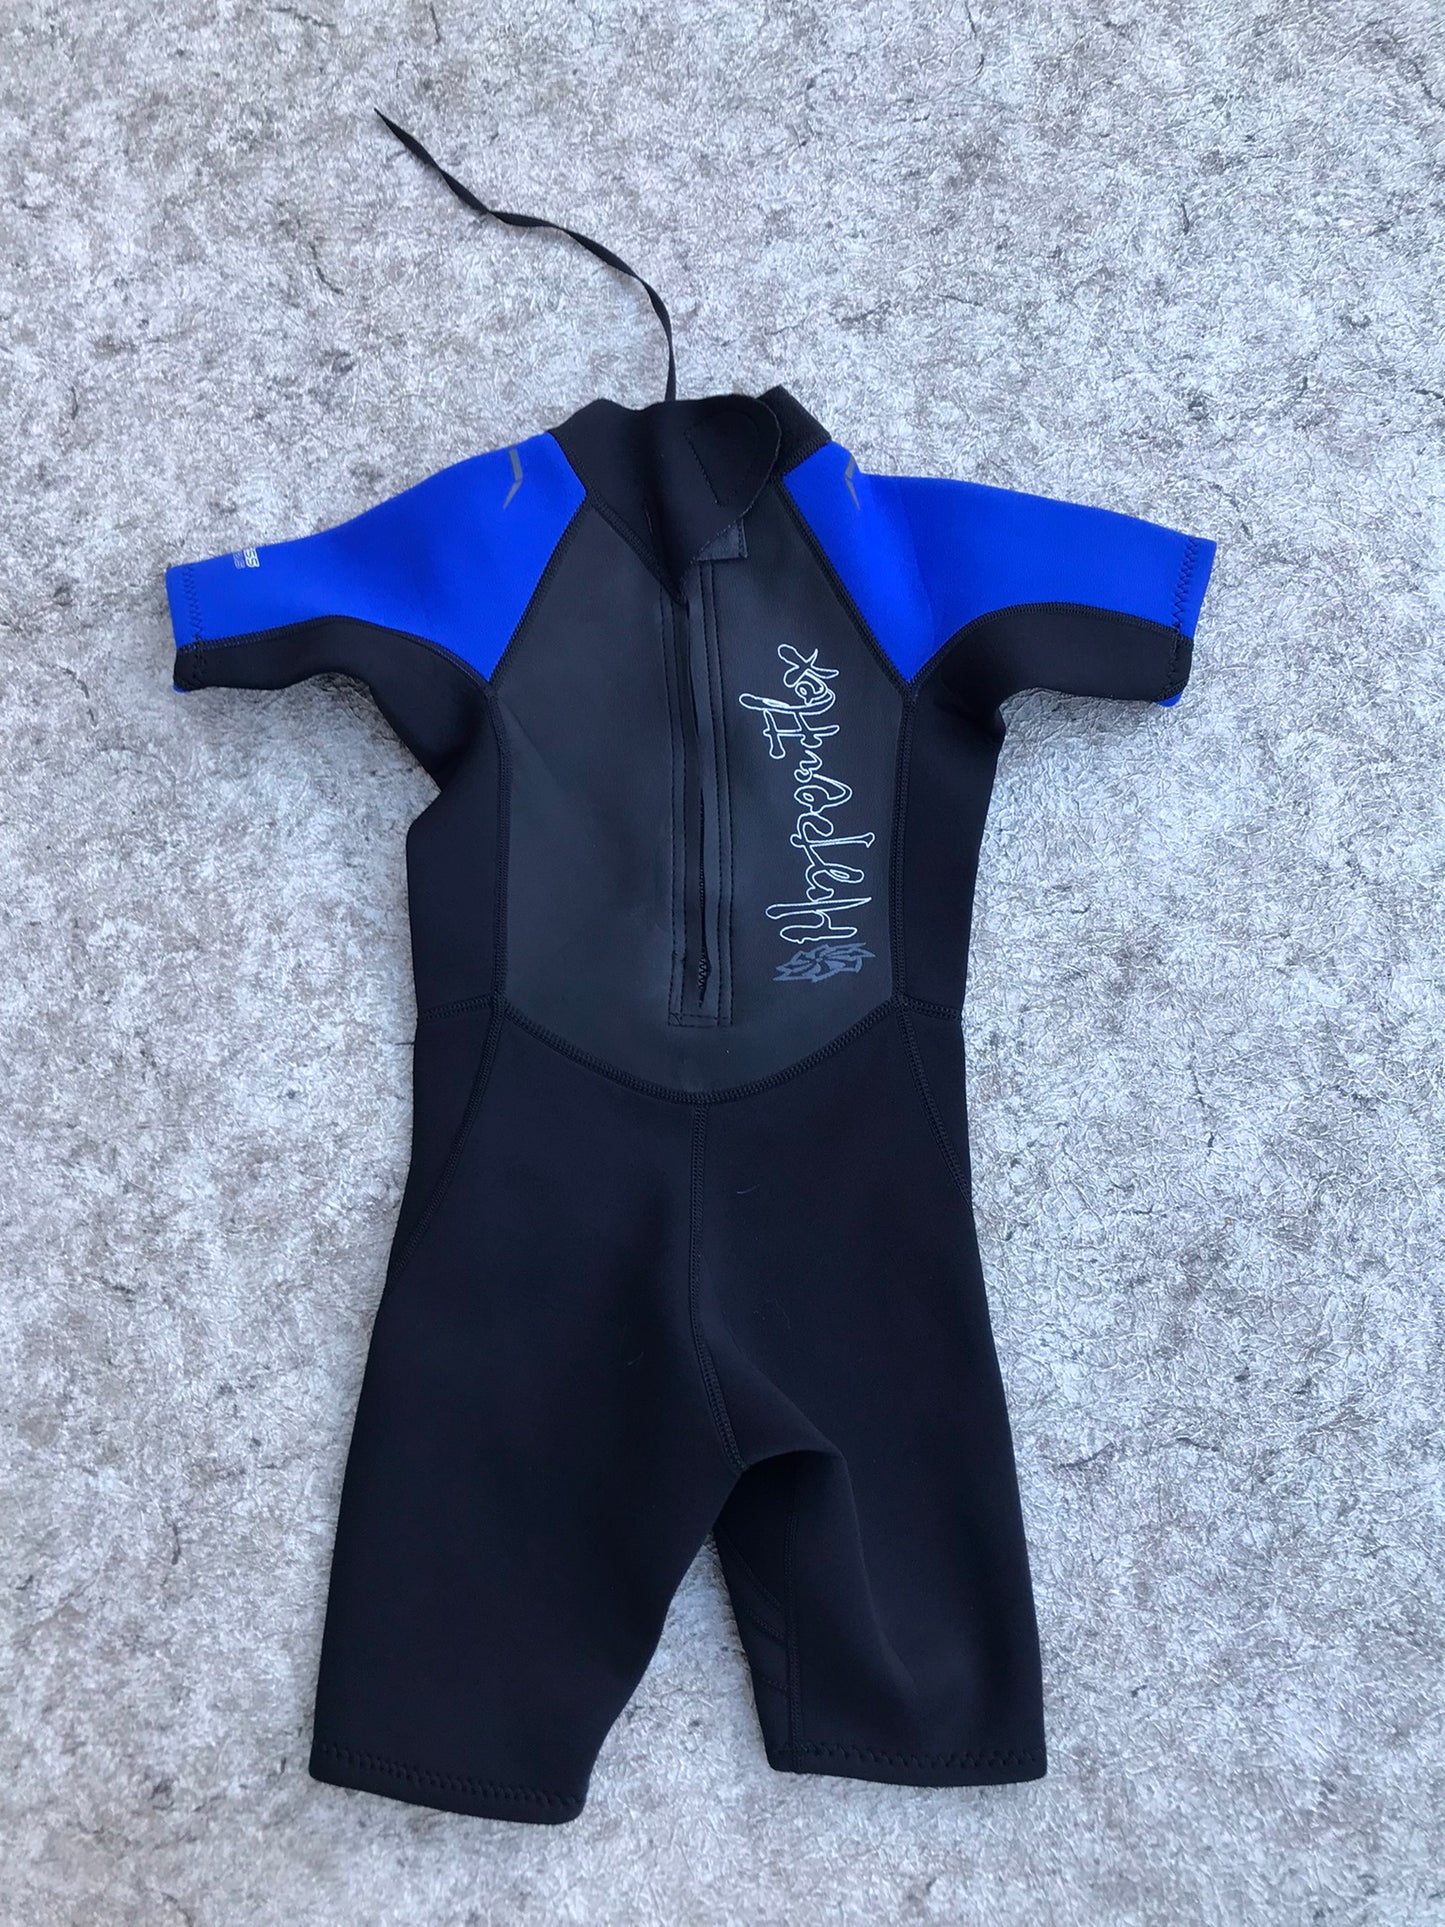 Wetsuit Child Size 6 Hyper Flex Blue Black 2.5 mm  Excellent